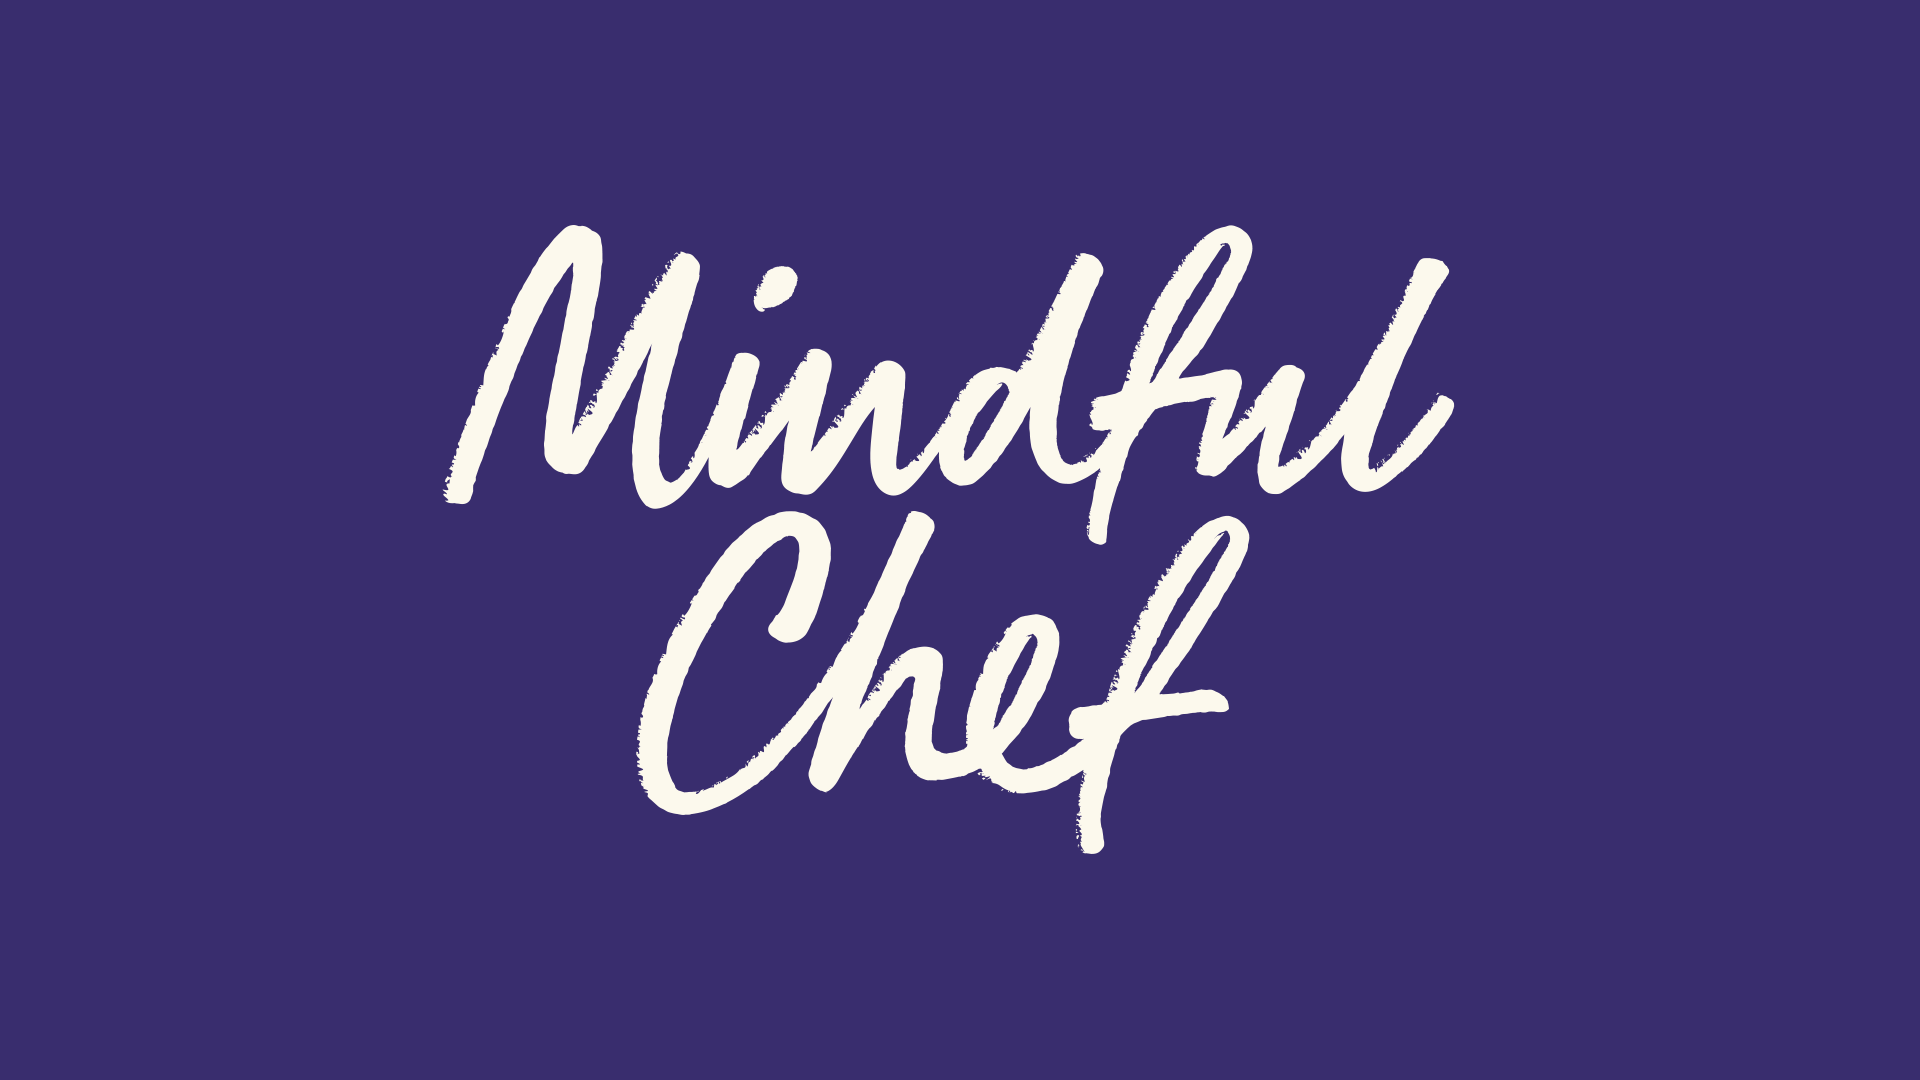 Mindfulchef logo 02